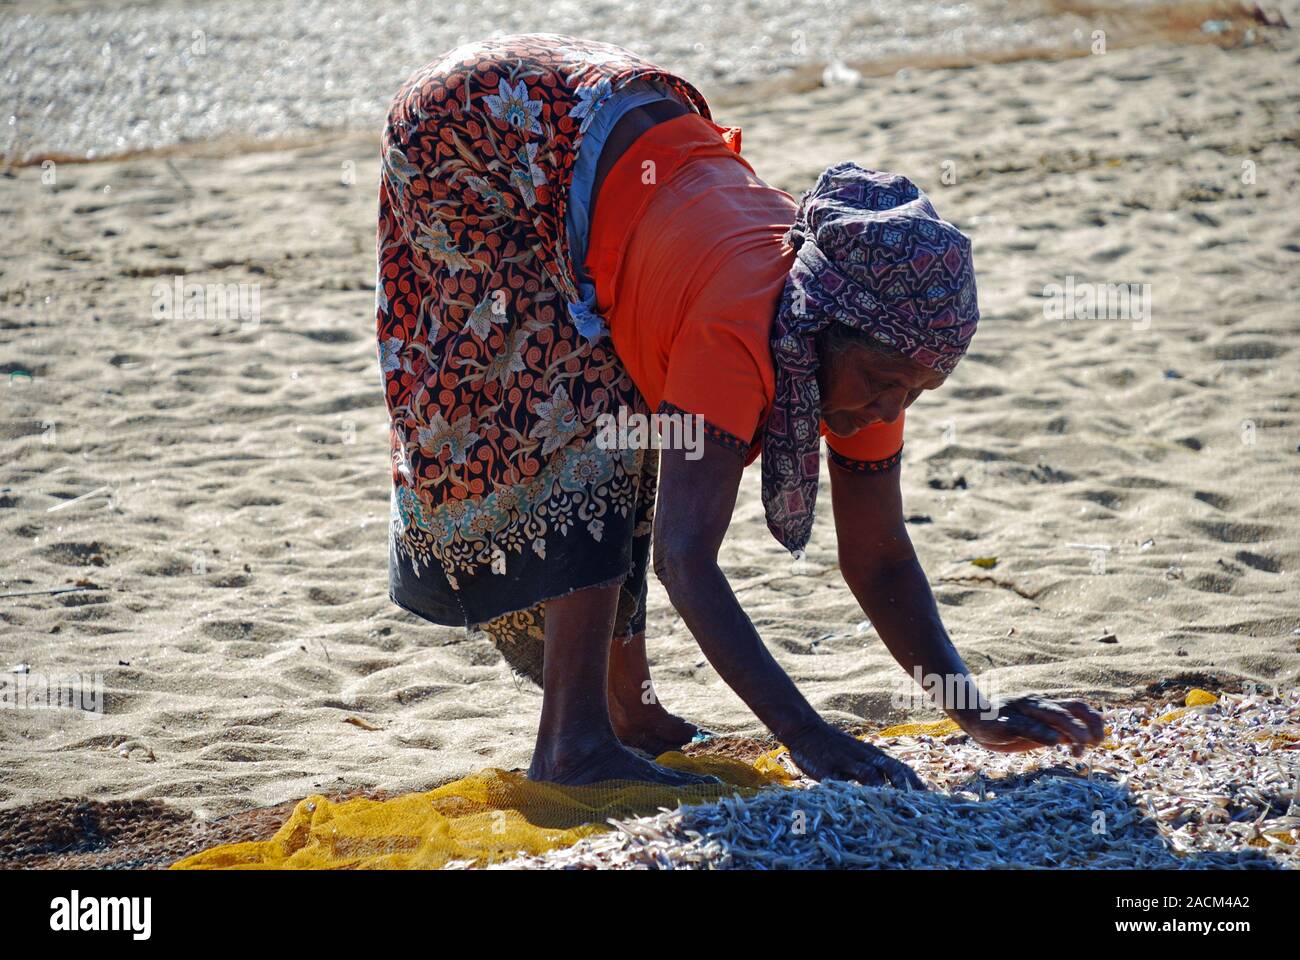 Singhalesin trocknet Fisch auf Kokos Matten am Strand, die Arbeit der Frauen, Negombo, Sri Lanka, Südafrika Asien, Asien Stockfoto